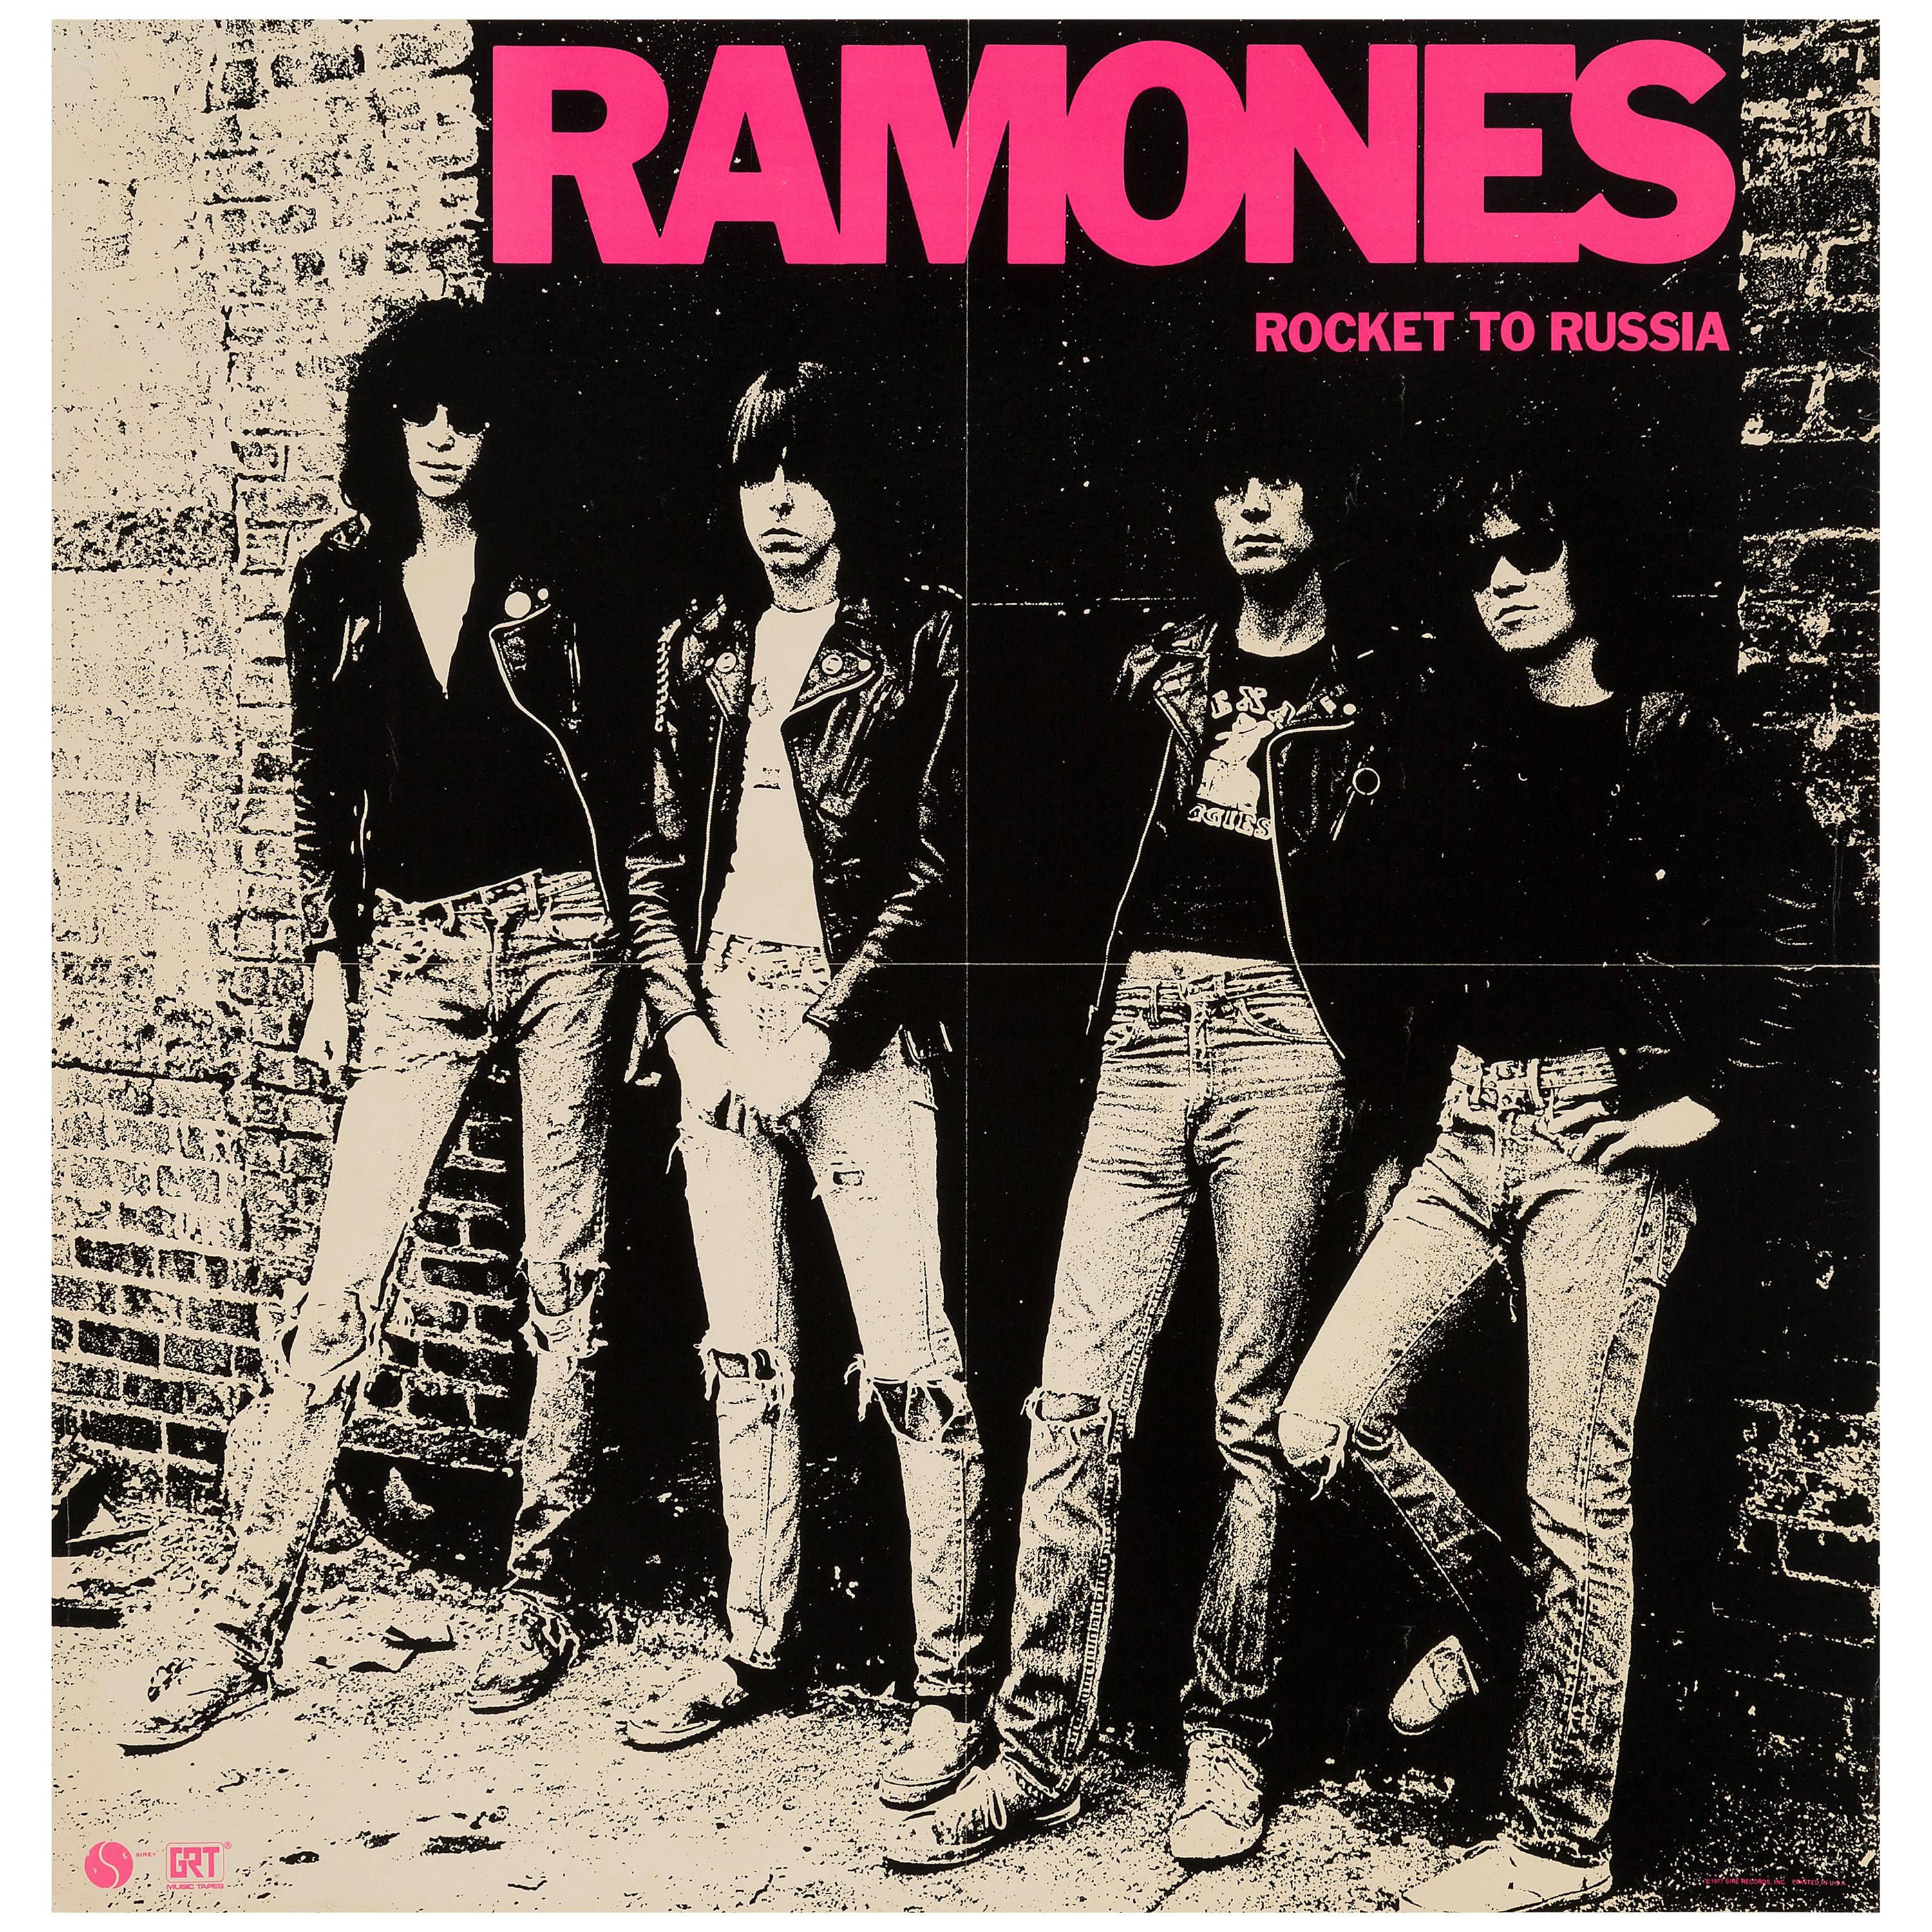 Ramones Original Vintage Rocket to Russia Promo Poster, American, 1977